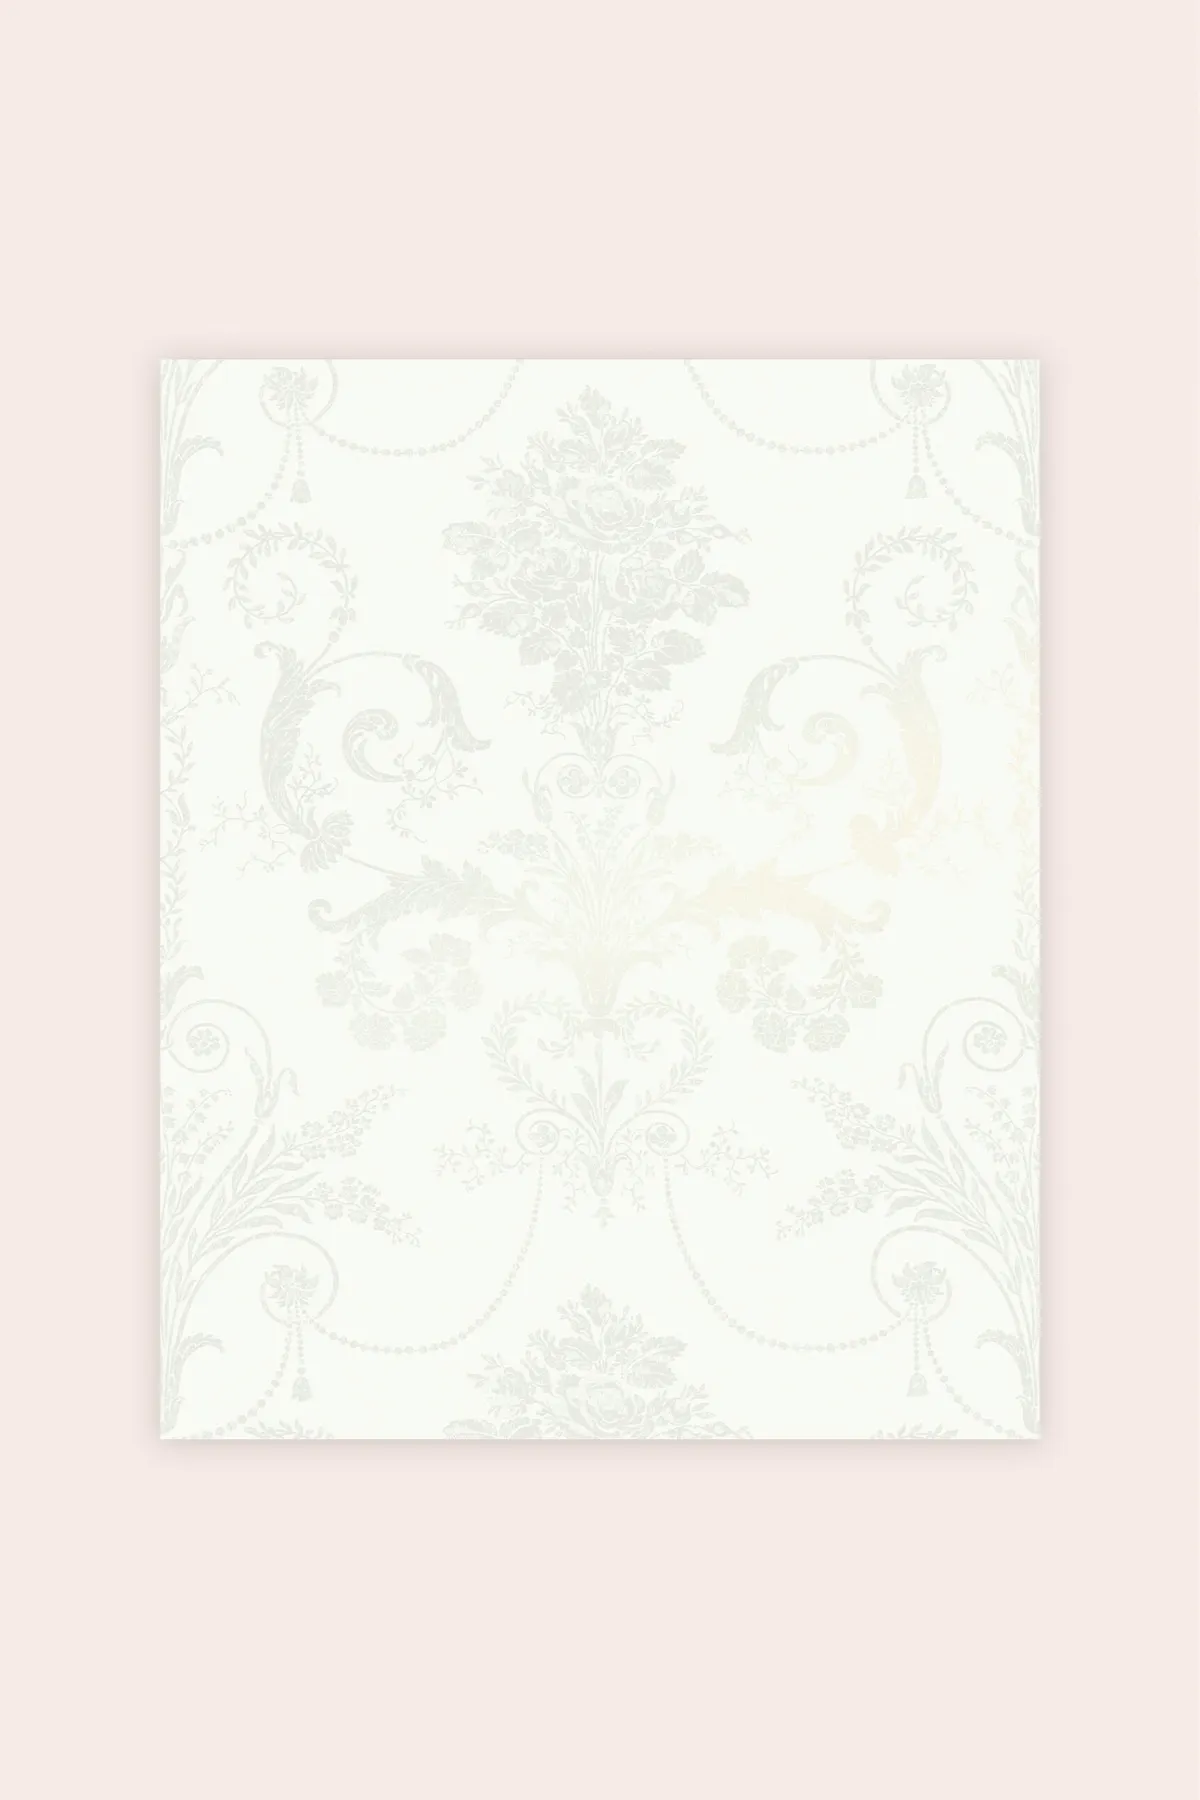 Laura Ashley Josette wallpaper in Pearlescent White, £44 per roll, Next